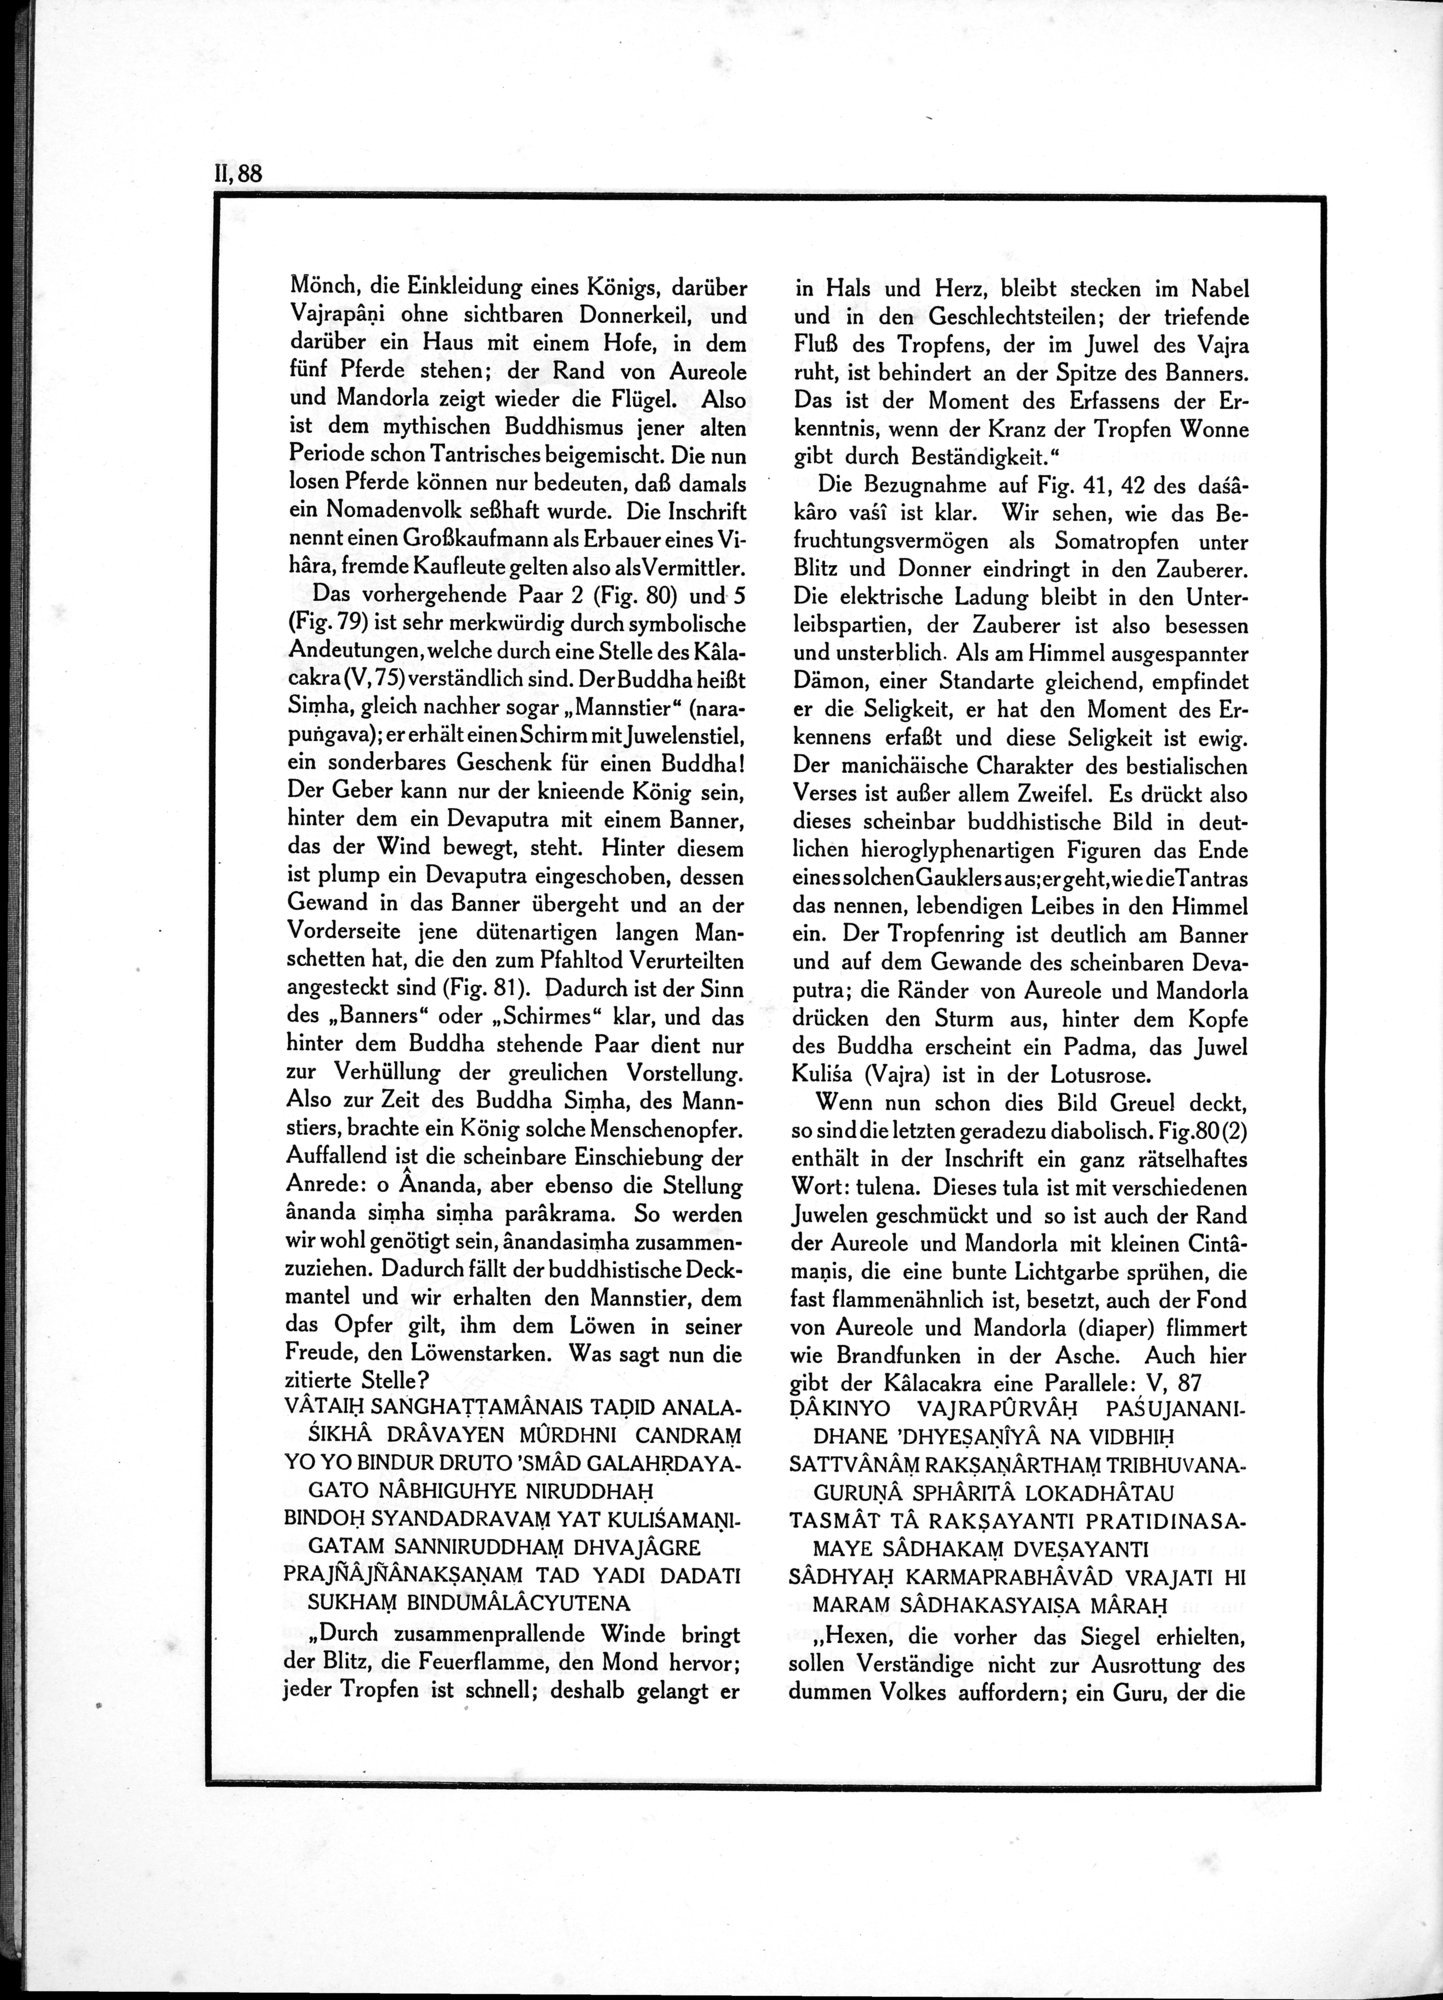 Die Teufel des Avesta und Ihre Beziehungen zur Ikonographie des Buddhismus Zentral-Asiens : vol.1 / Page 544 (Grayscale High Resolution Image)